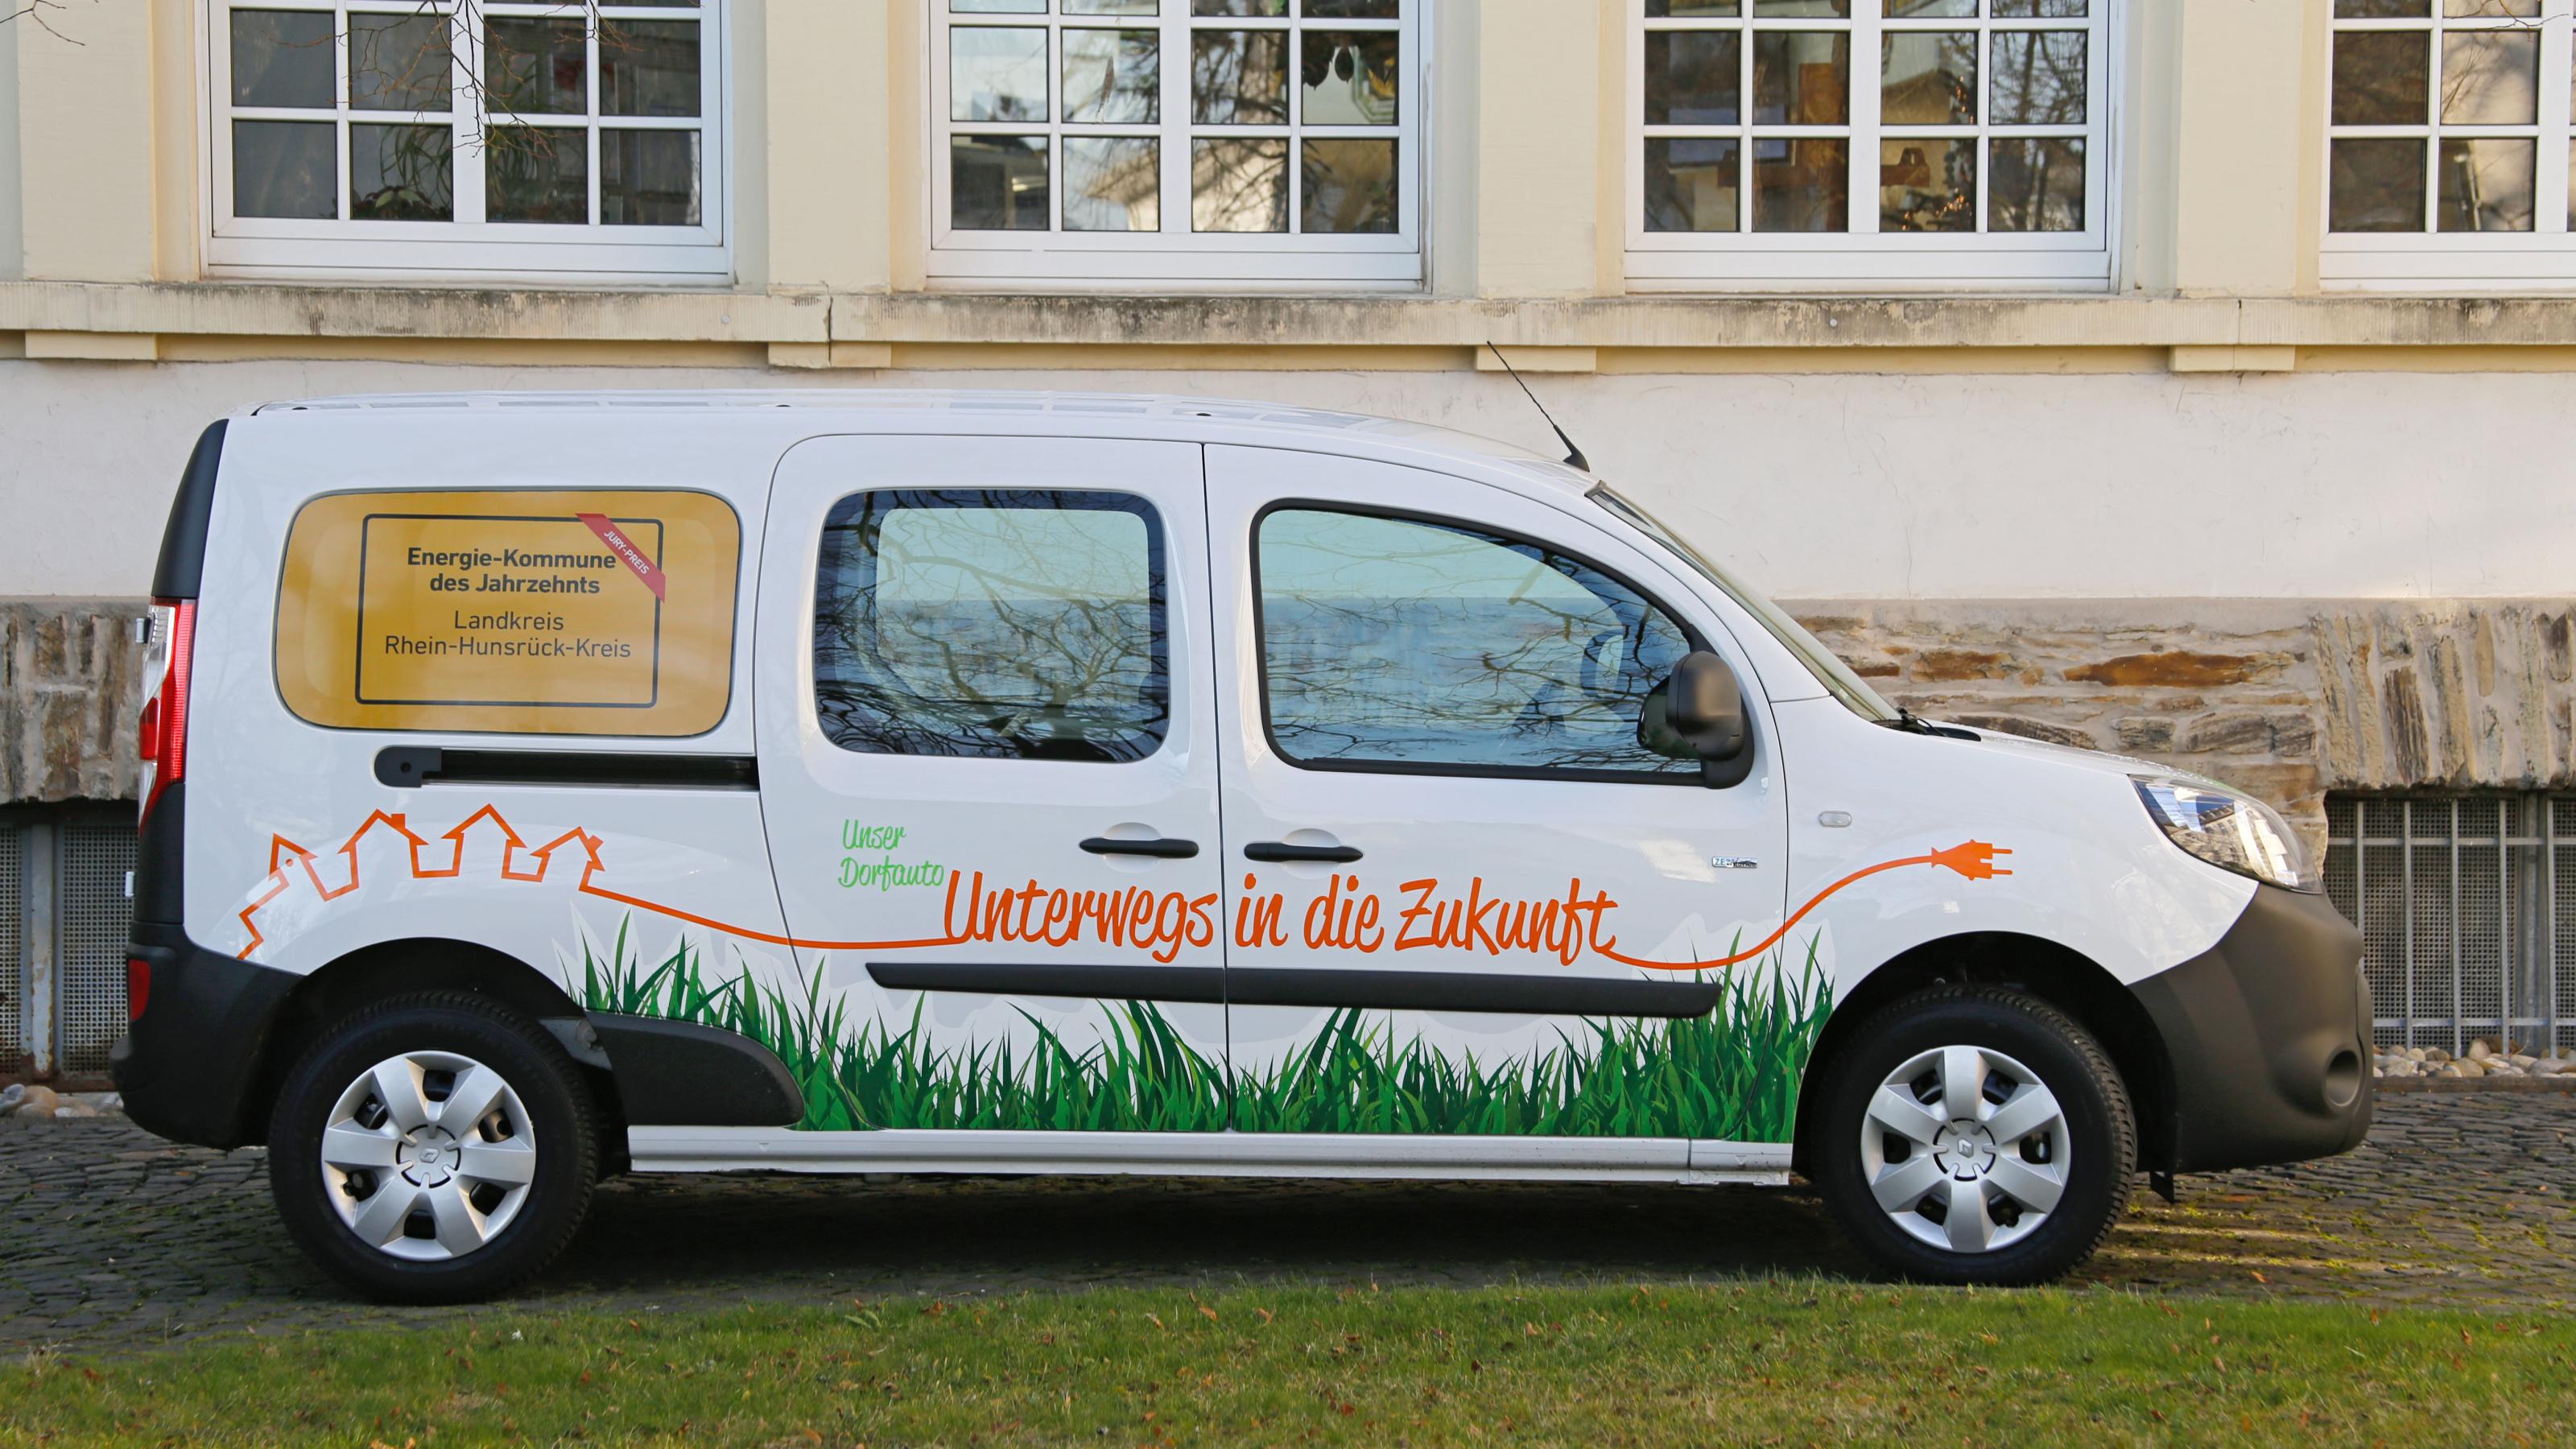 Das Bild zeigt einen Renault Kangoo Maxi, einen elektrisch betriebenen Multi-Van. Die Aufschrift besagt „Unterwegs in die Zukunft“.